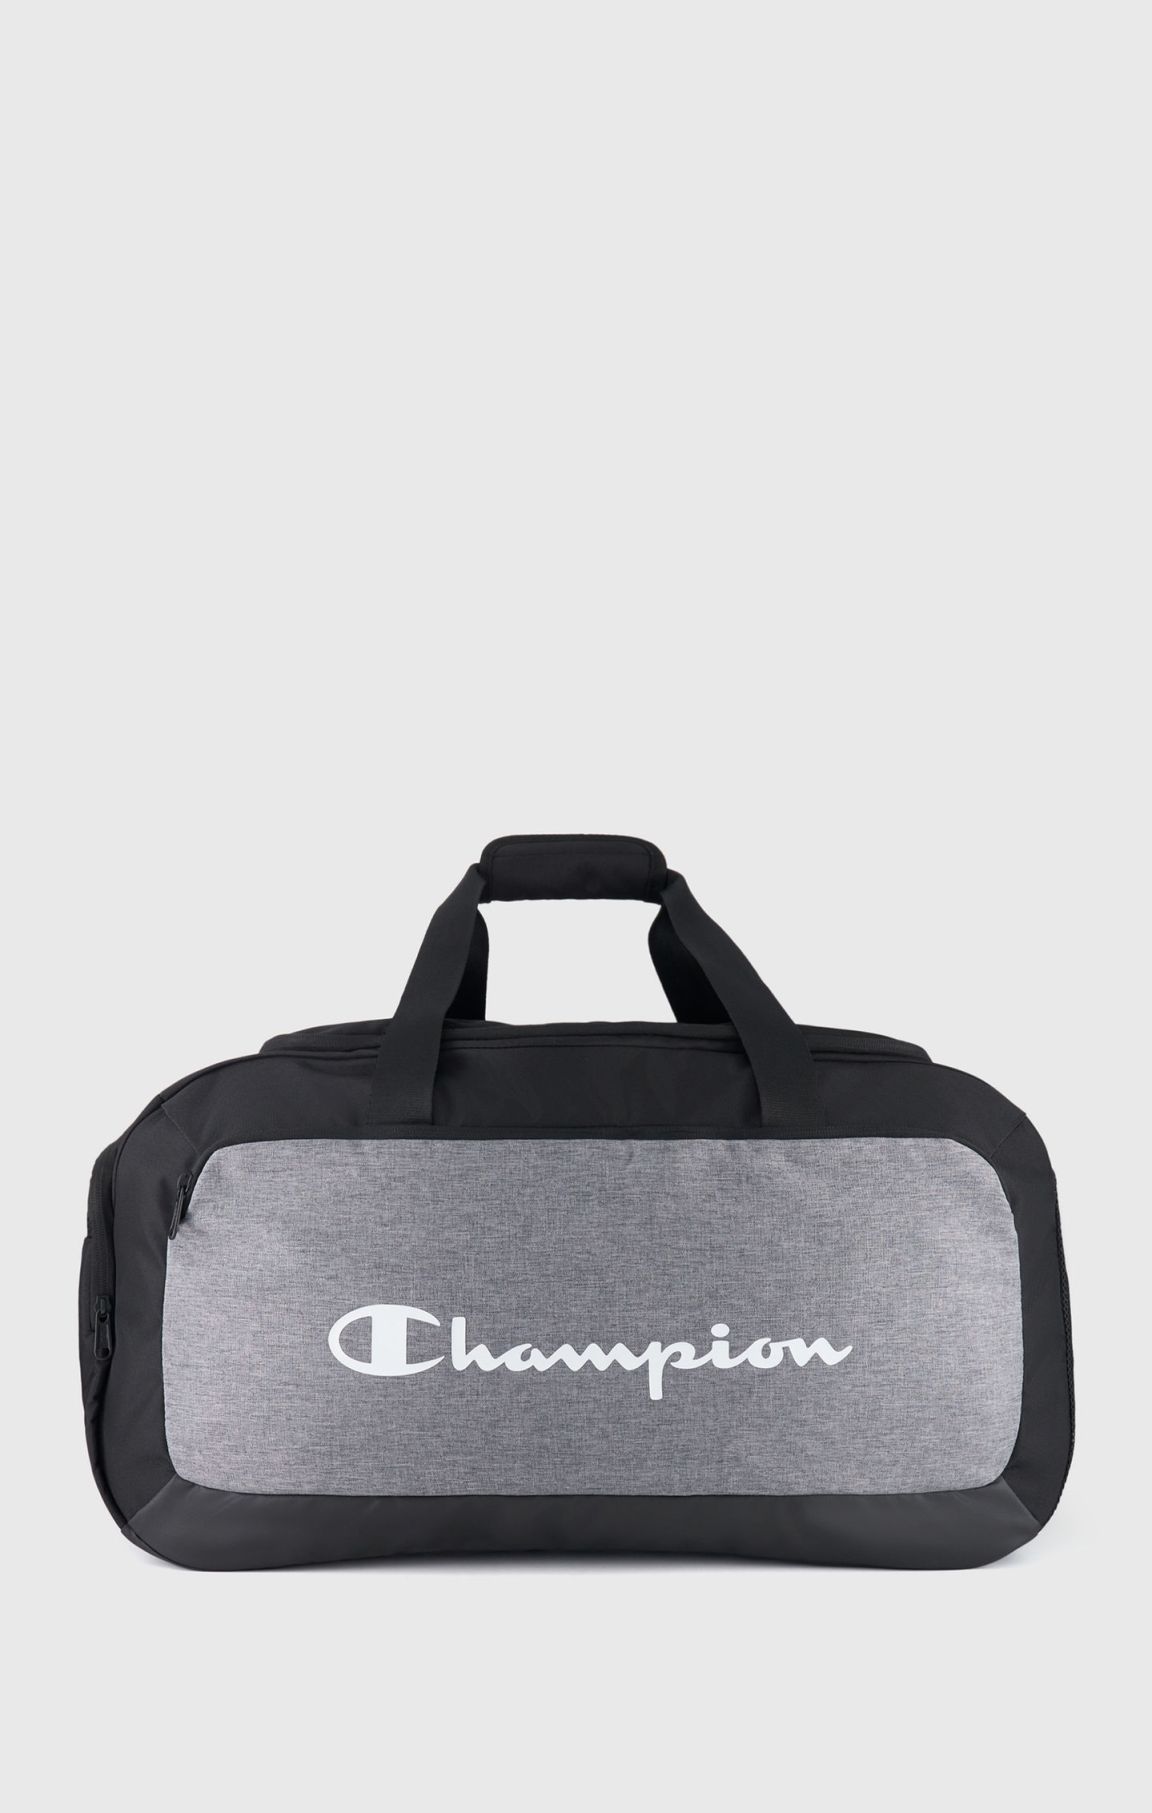 Mittelgroße Duffle Bag mit Champion-Logo